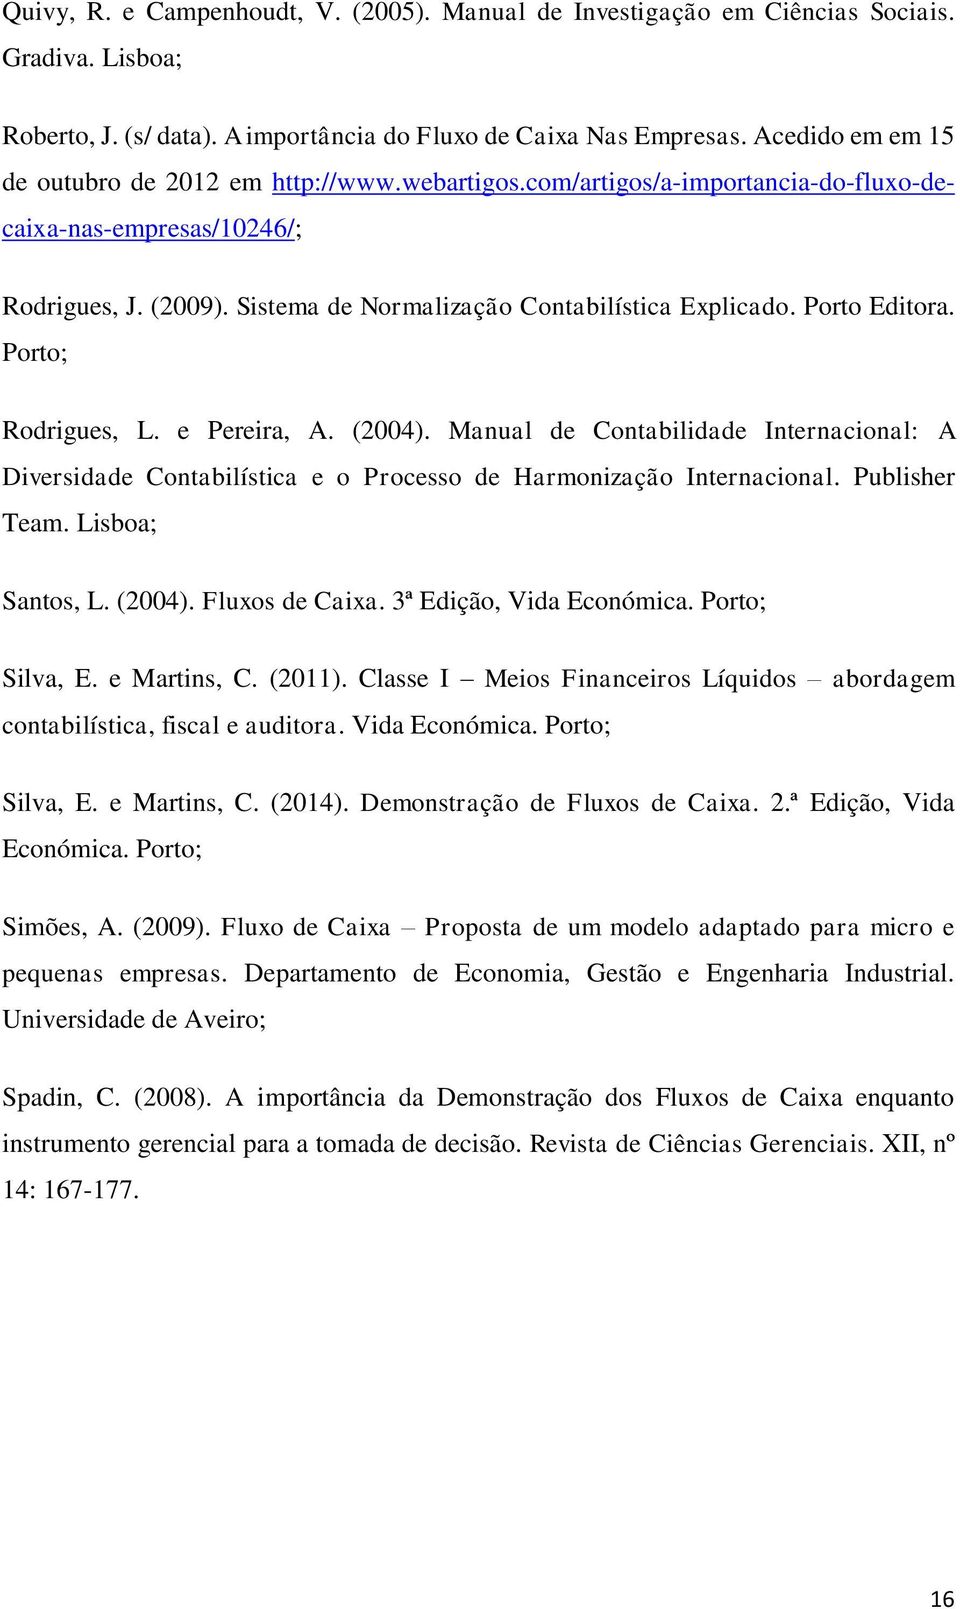 Porto Editora. Porto; Rodrigues, L. e Pereira, A. (2004). Manual de Contabilidade Internacional: A Diversidade Contabilística e o Processo de Harmonização Internacional. Publisher Team.